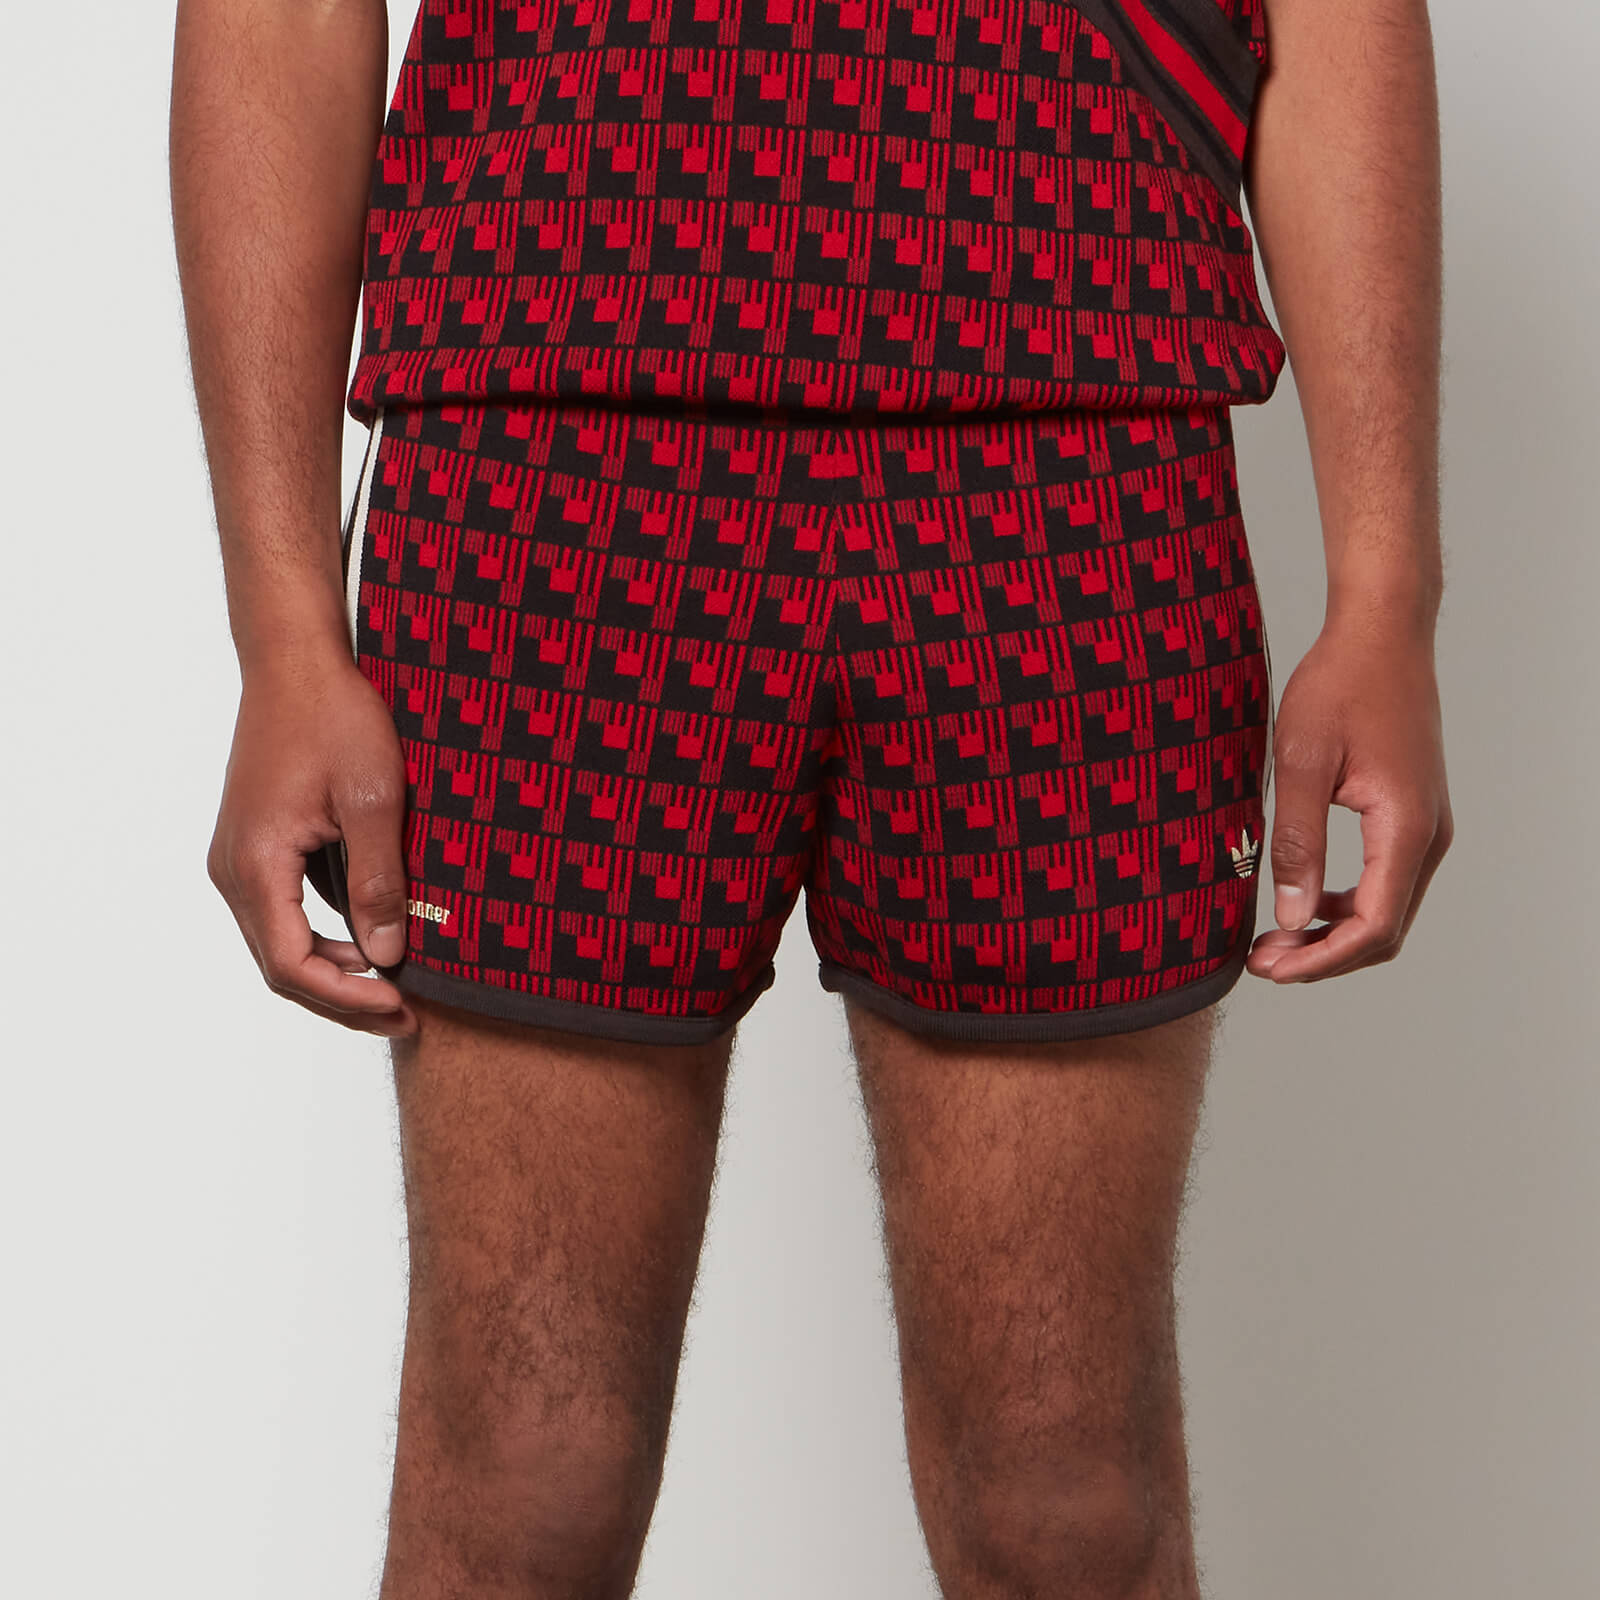 Adidas X Wales Bonner Men's Knit Shorts - Multicolor - S